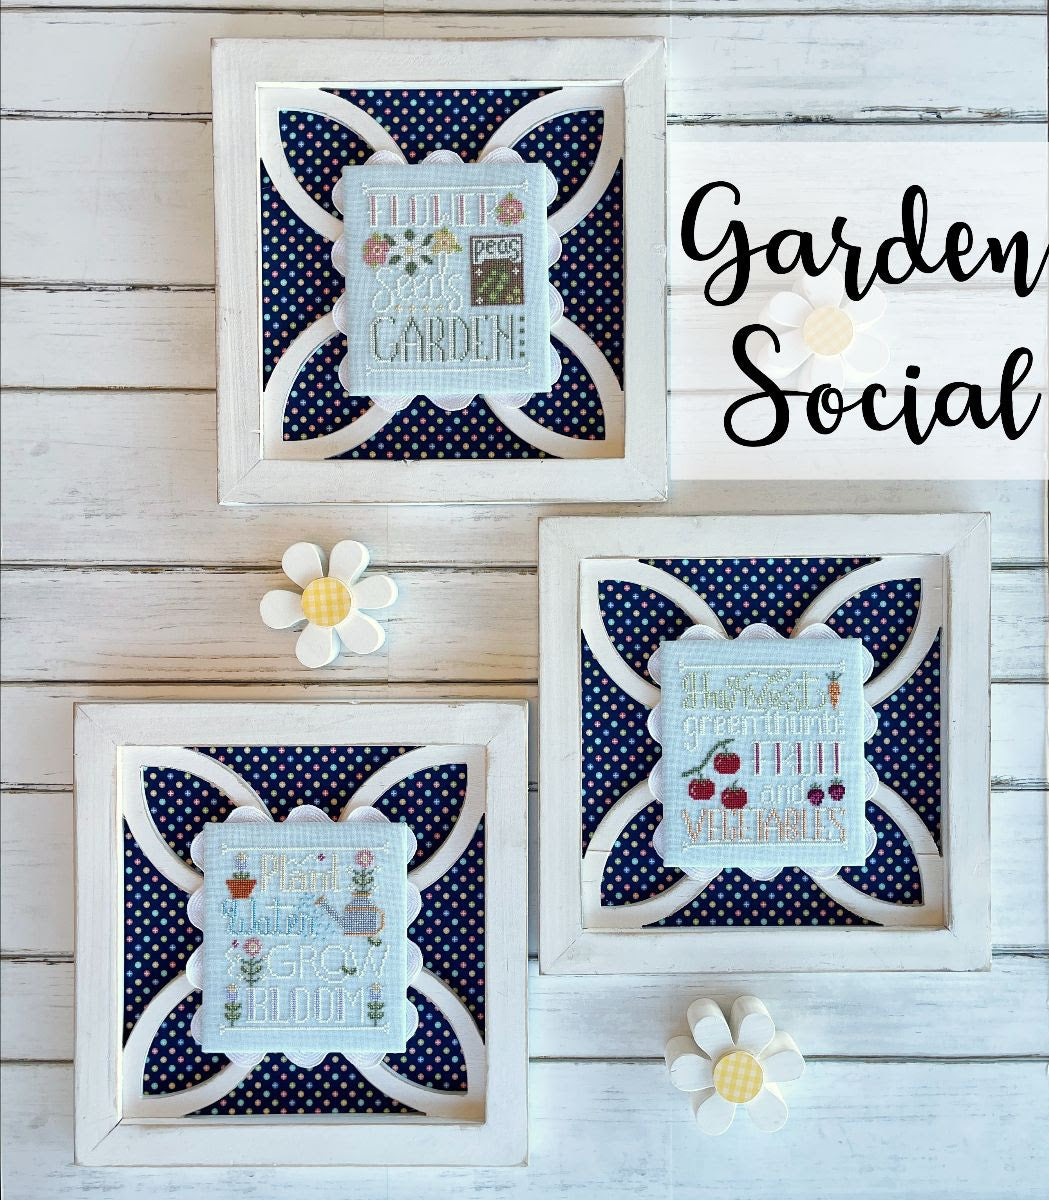 Garden Social | Little Stitch Girl